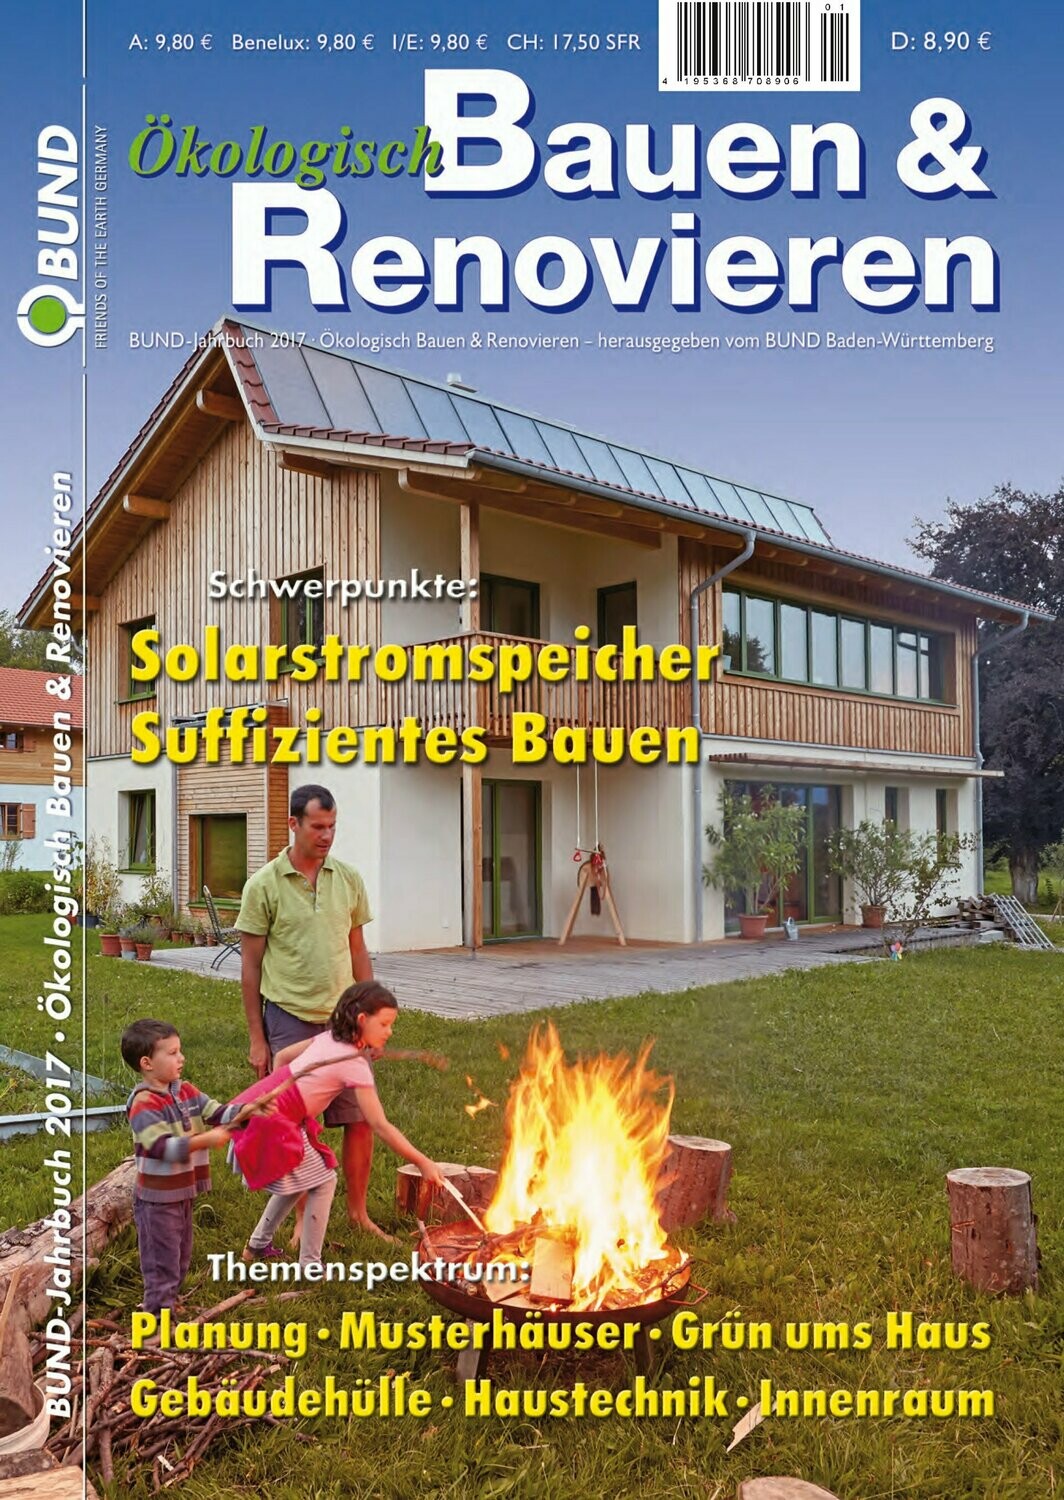 Ökologisch Bauen & Renovieren 2017 (e-paper)